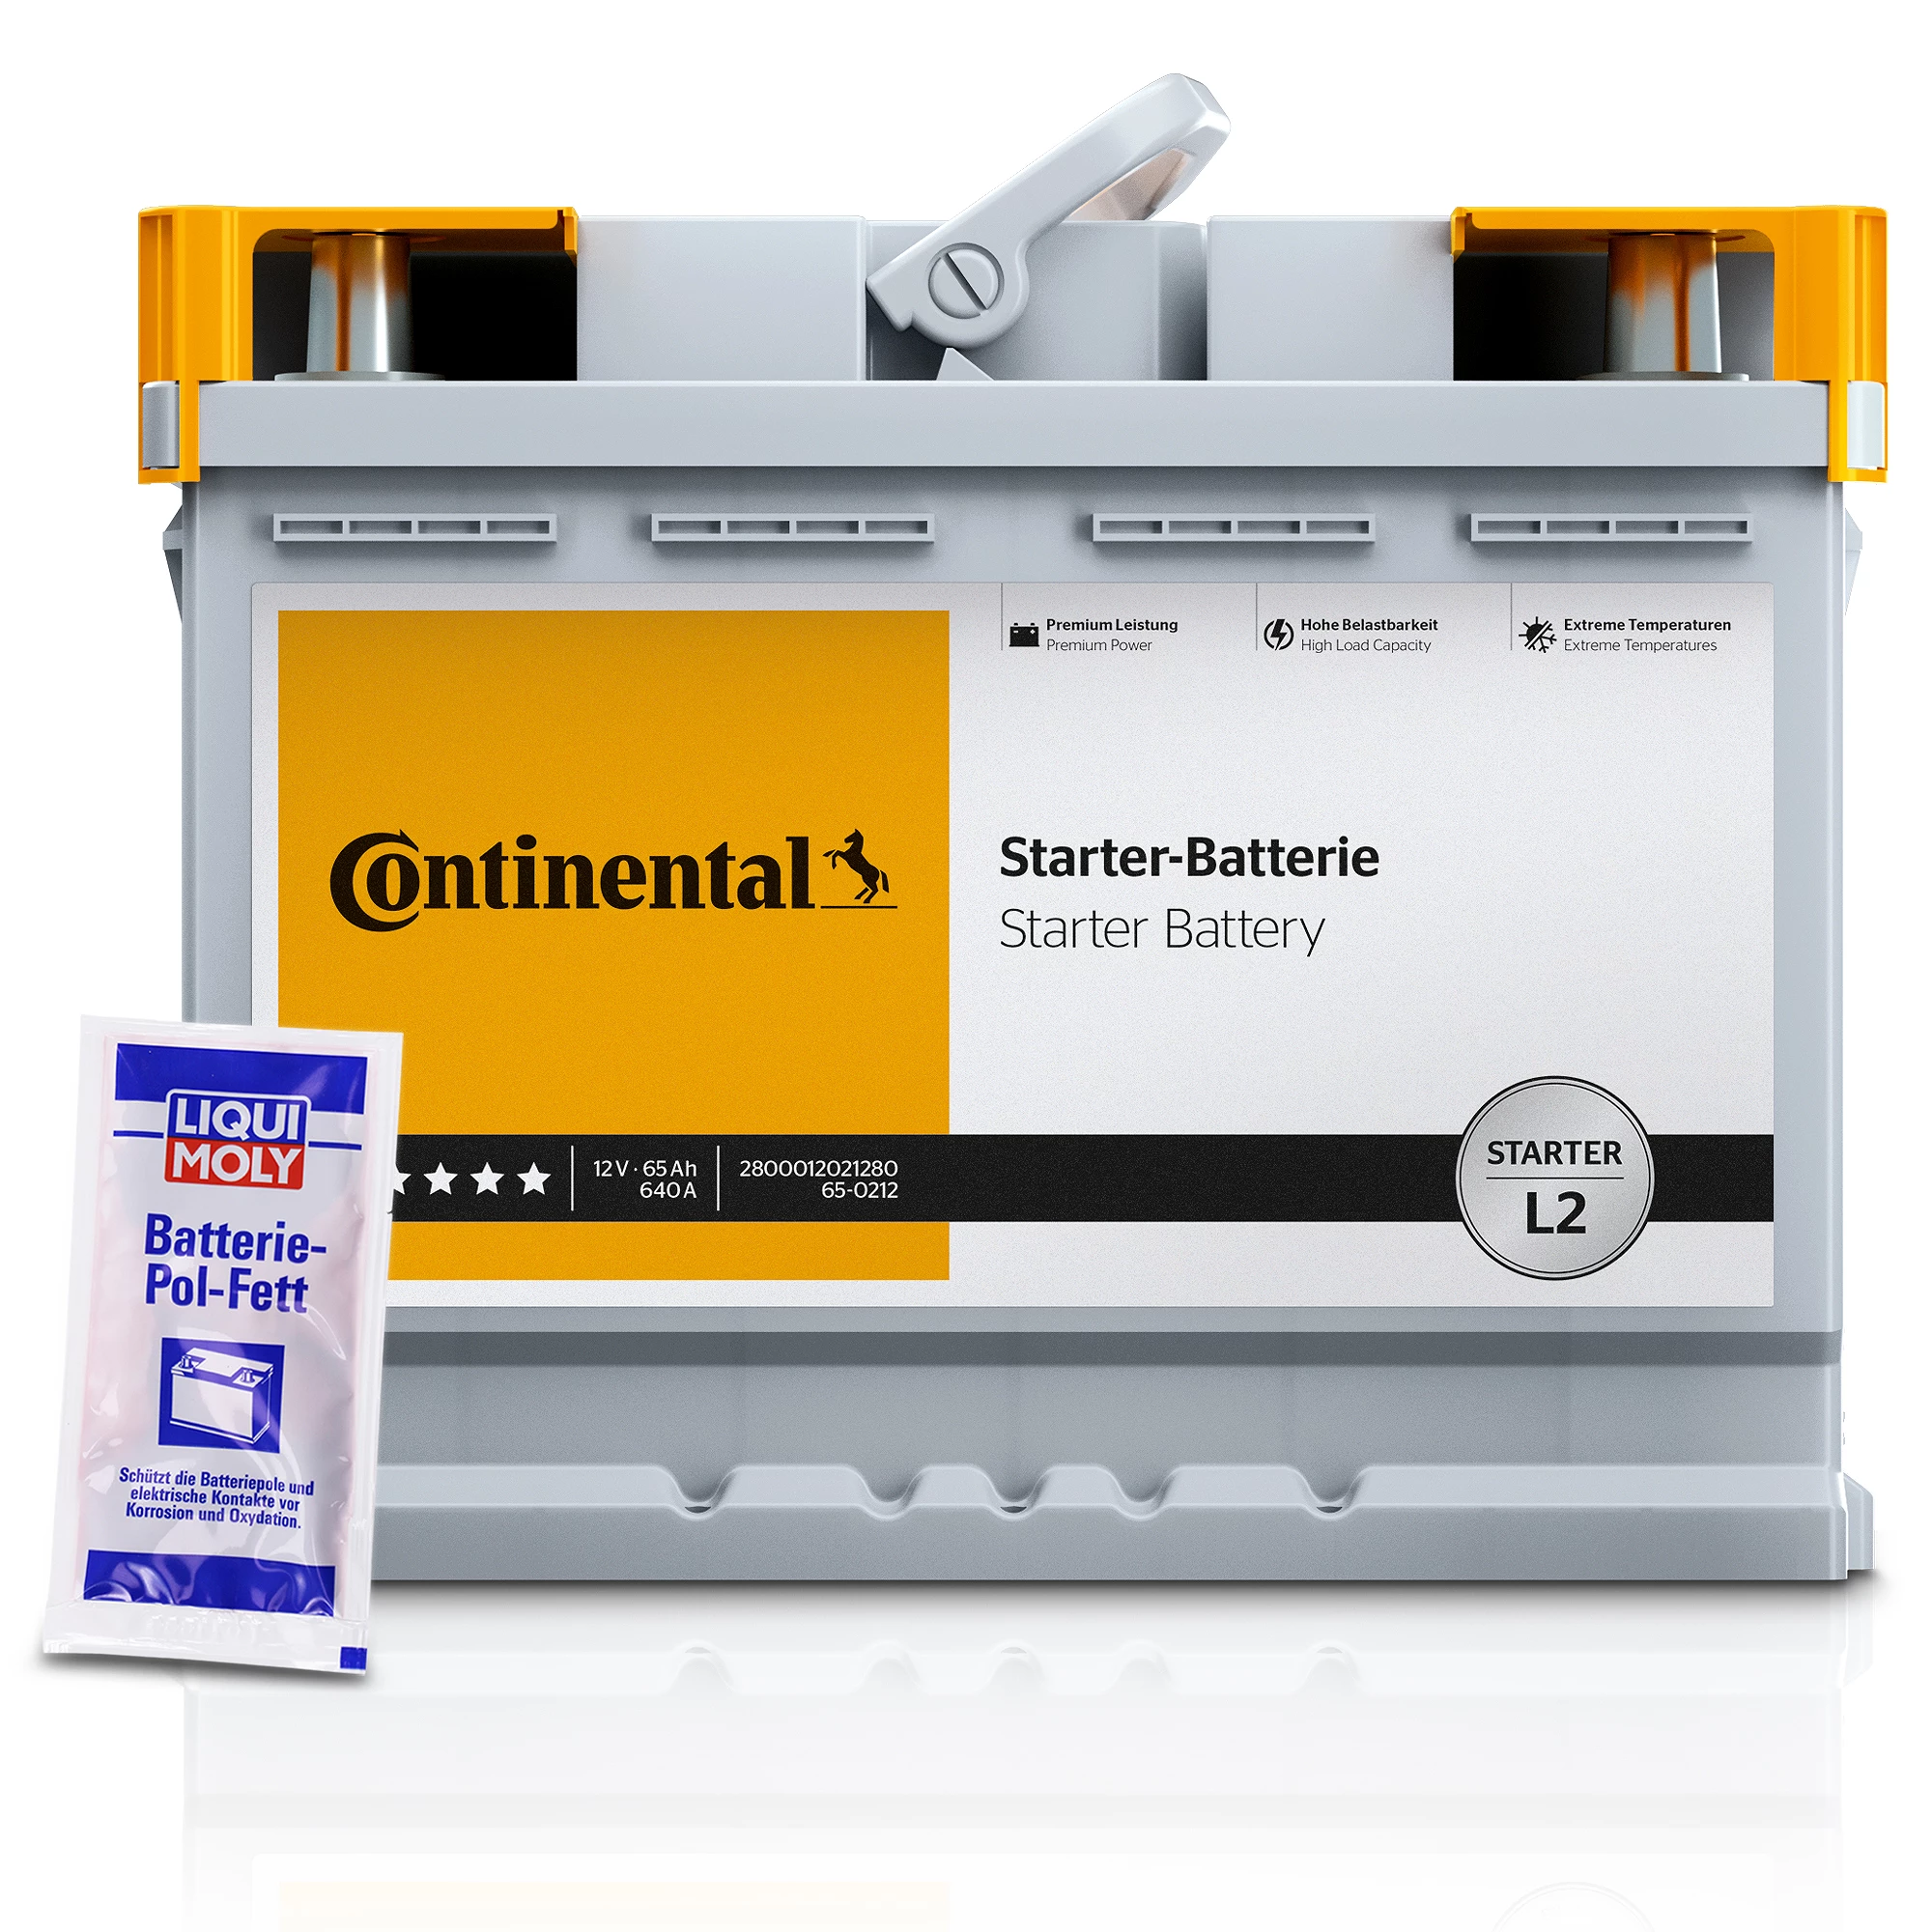 Continental Starter 2800012018280 Batterie 12V 50Ah 500A B13 Blei-Kalzium- Batterie (Pb/Ca), Bleiakkumulator 2800012018280